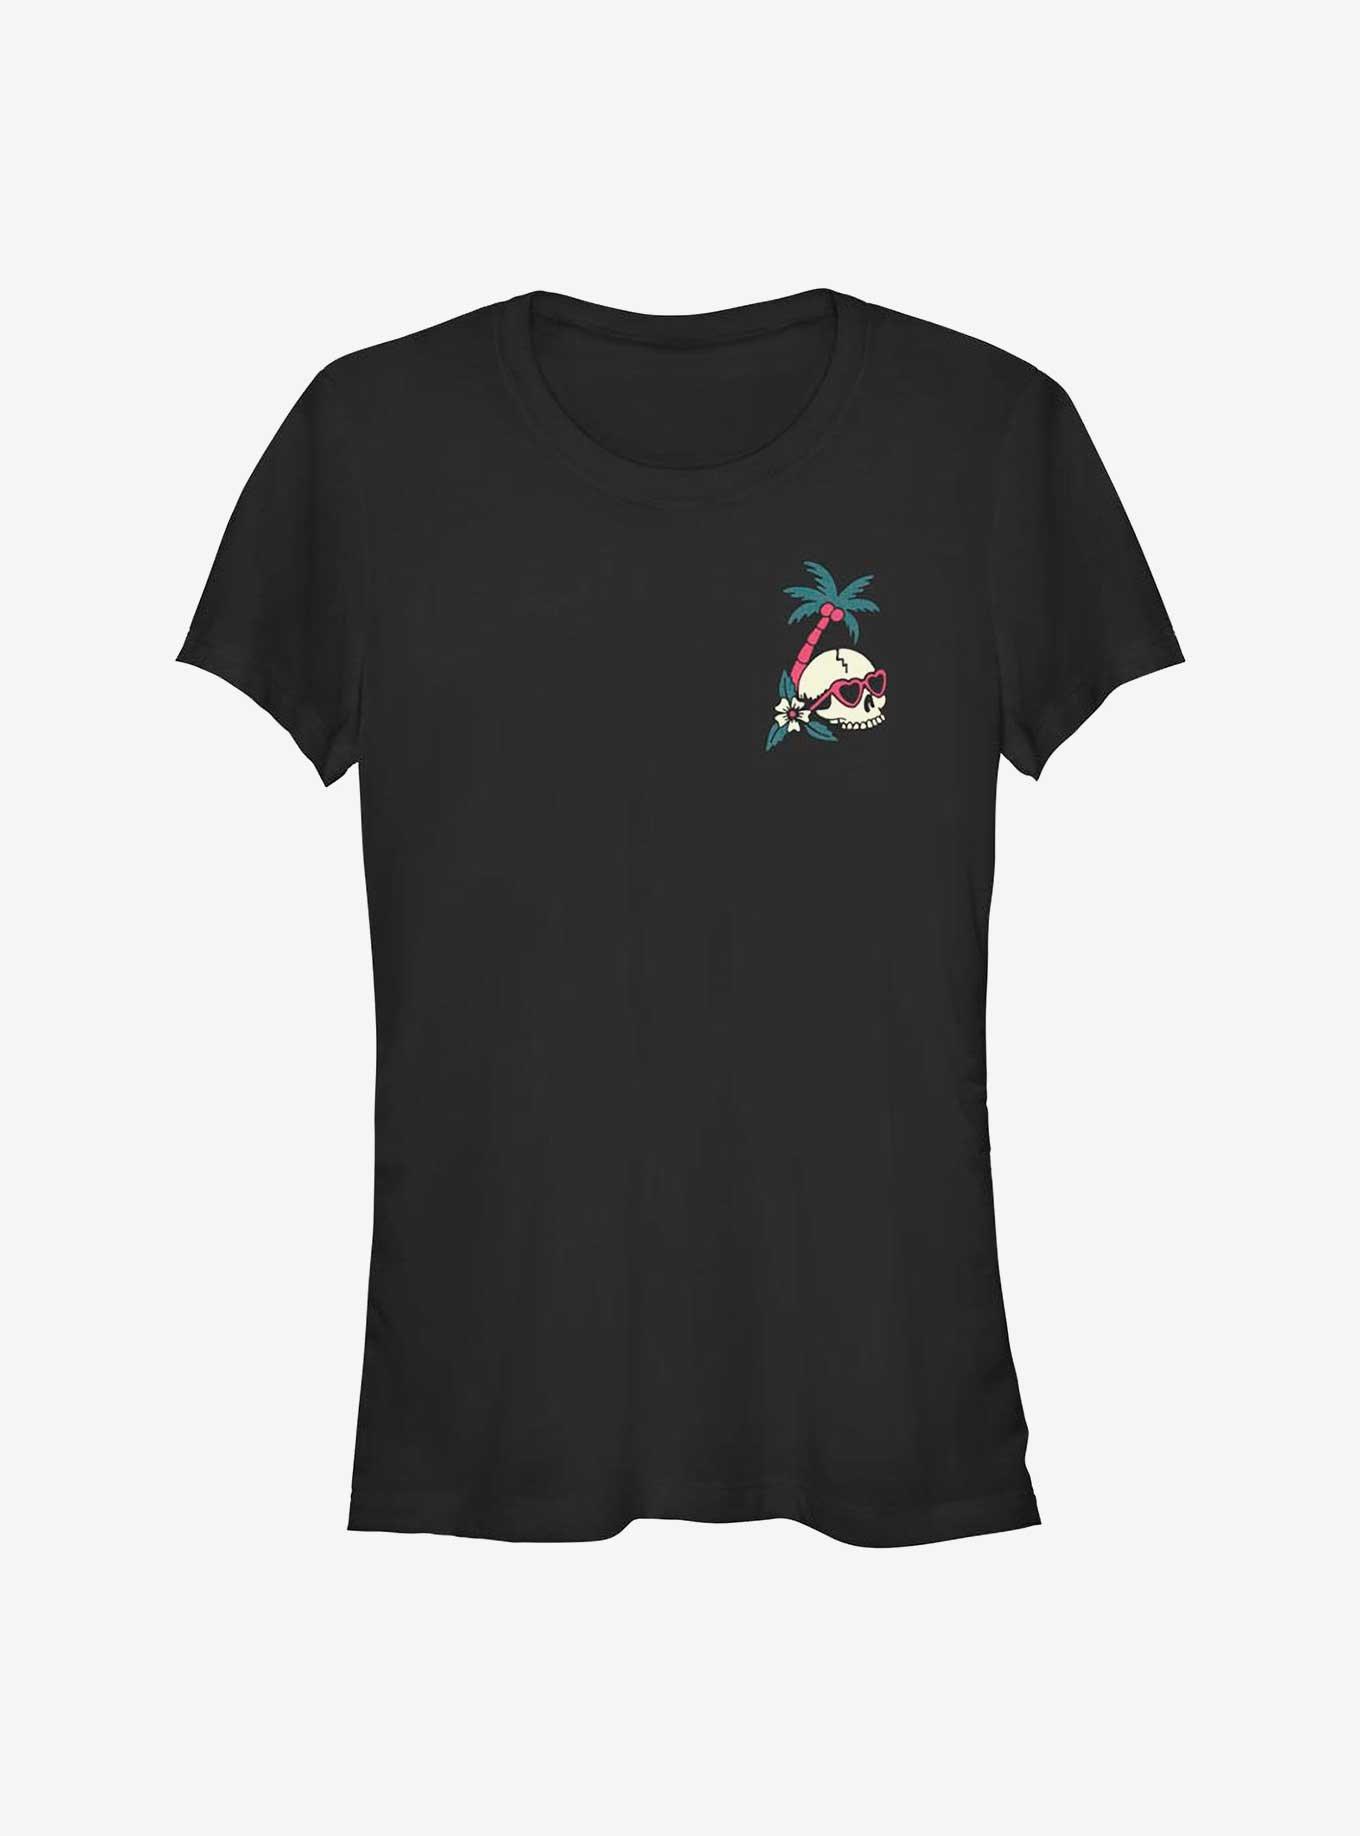 Tropic Skull Emblem Girls T-Shirt, BLACK, hi-res